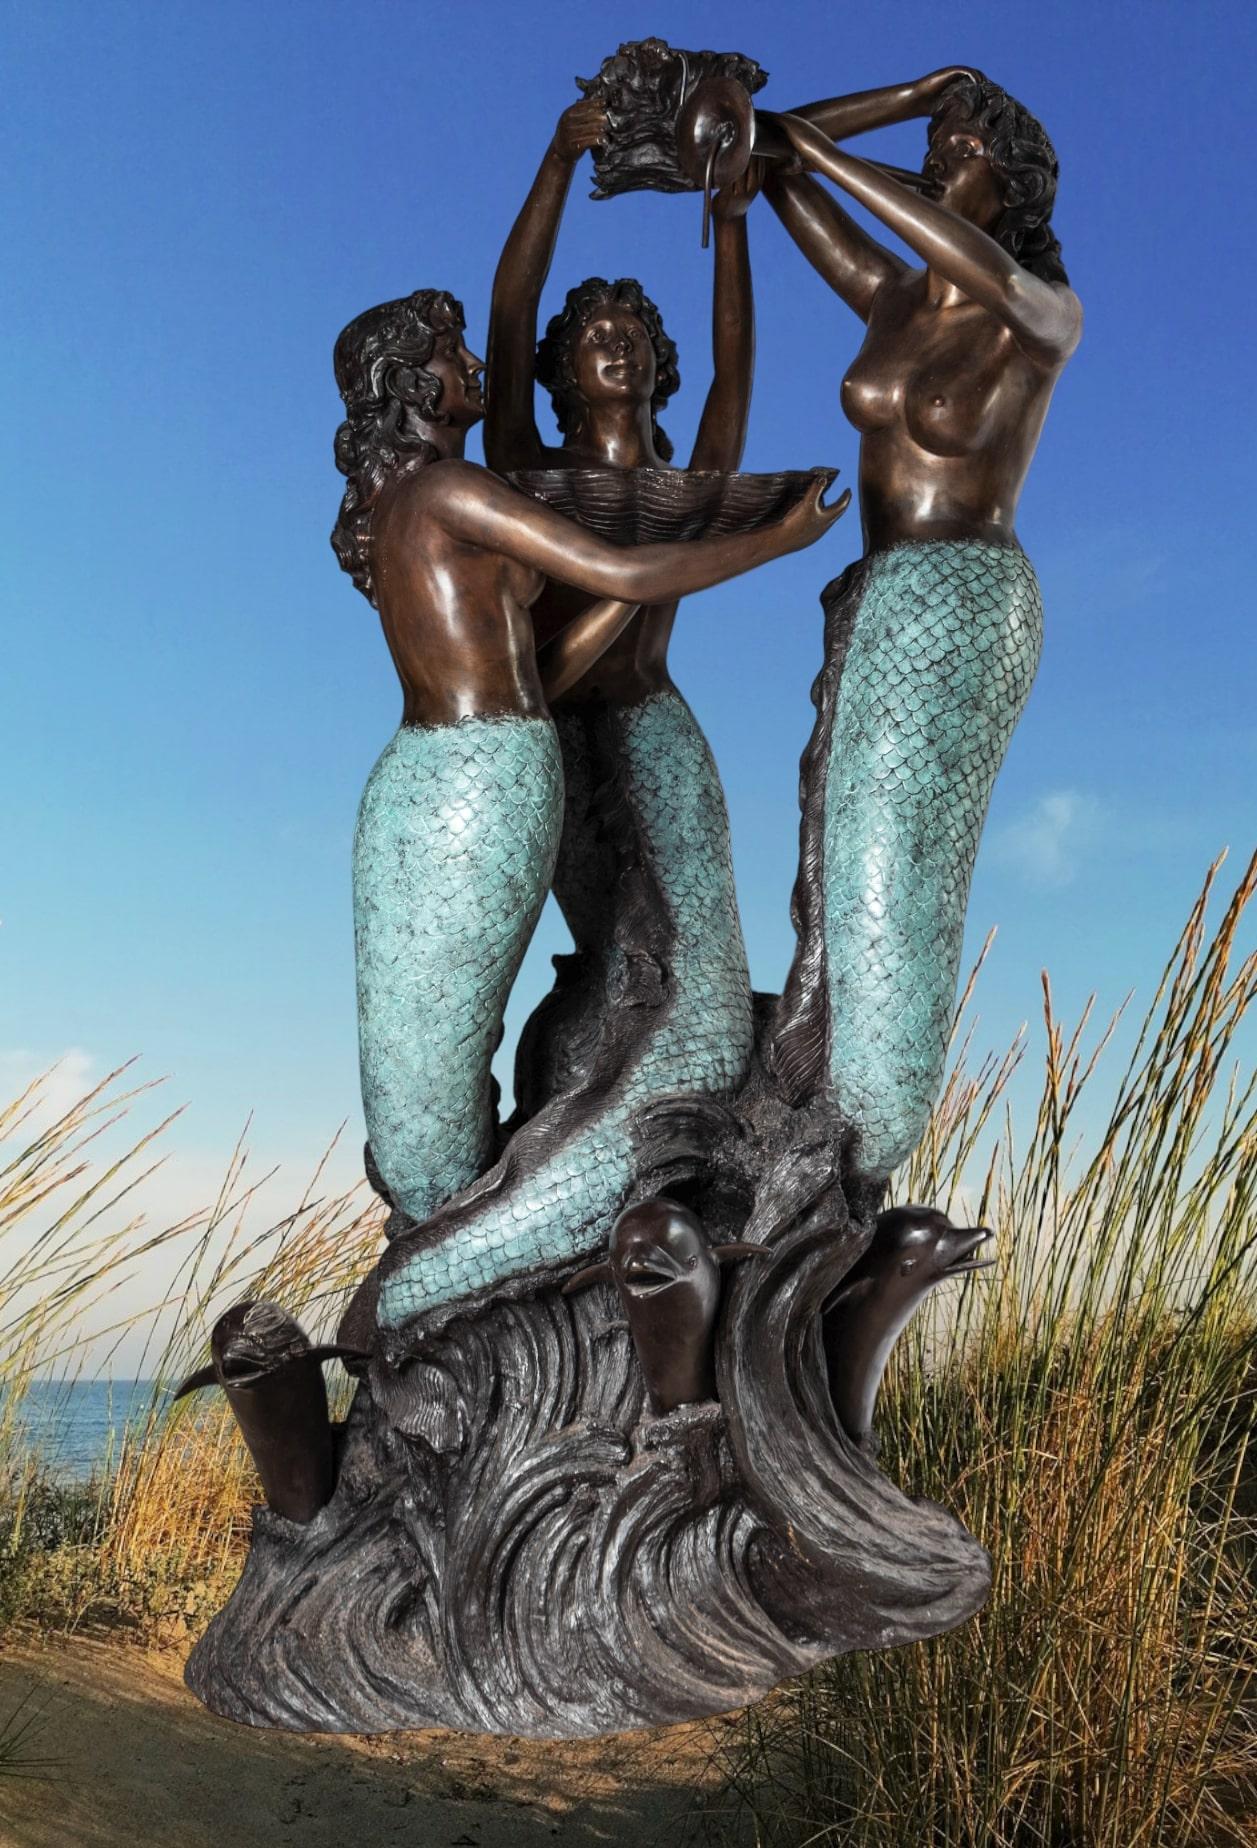 Monumentaler Wasserbrunnen aus Bronze, der drei Meerjungfrauen über den Wellen darstellt, die von springenden Delphinen umgeben sind. Eine große Muschel, die von einer der Meerjungfrauen gehalten wird, fängt das Wasser von oben auf und leitet es in